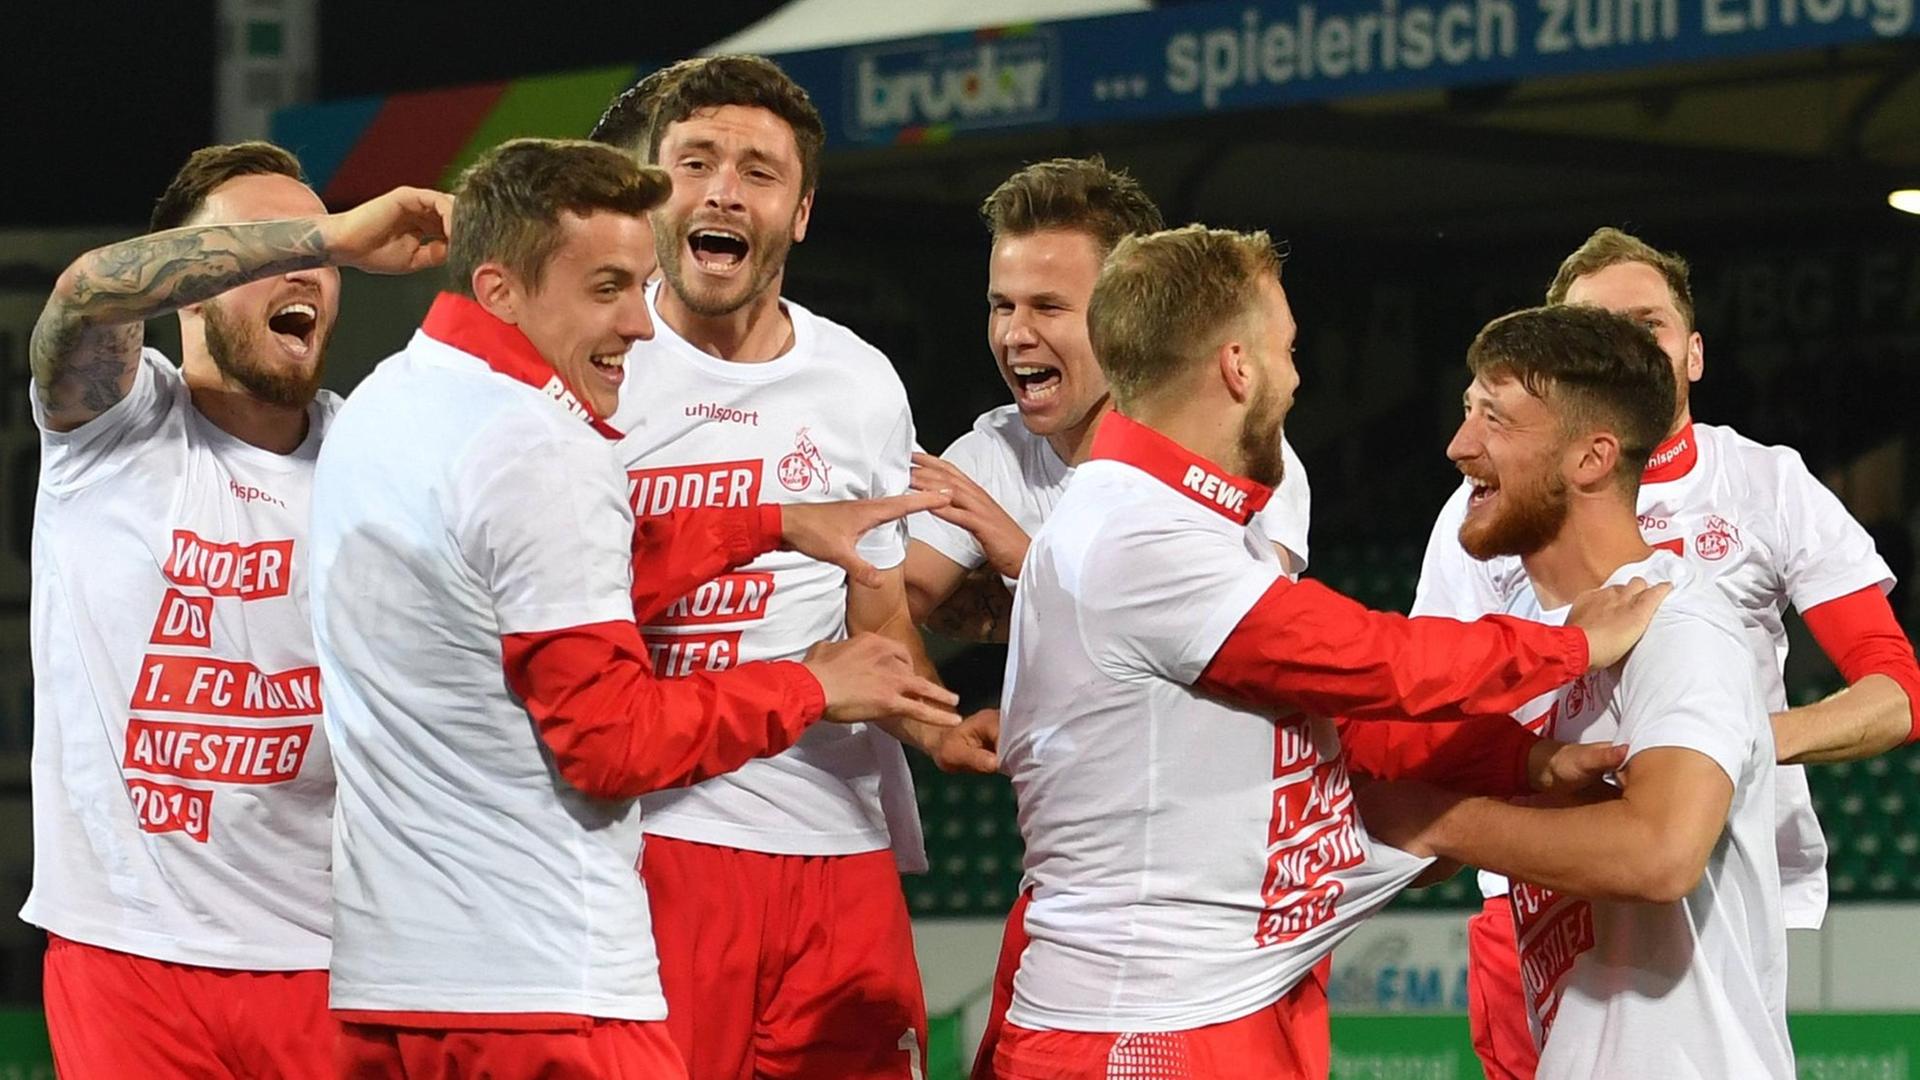 Das Foto zeigt Spieler des 1. FC Köln. Sie feiern den Aufstieg in die Bundes-Liga.